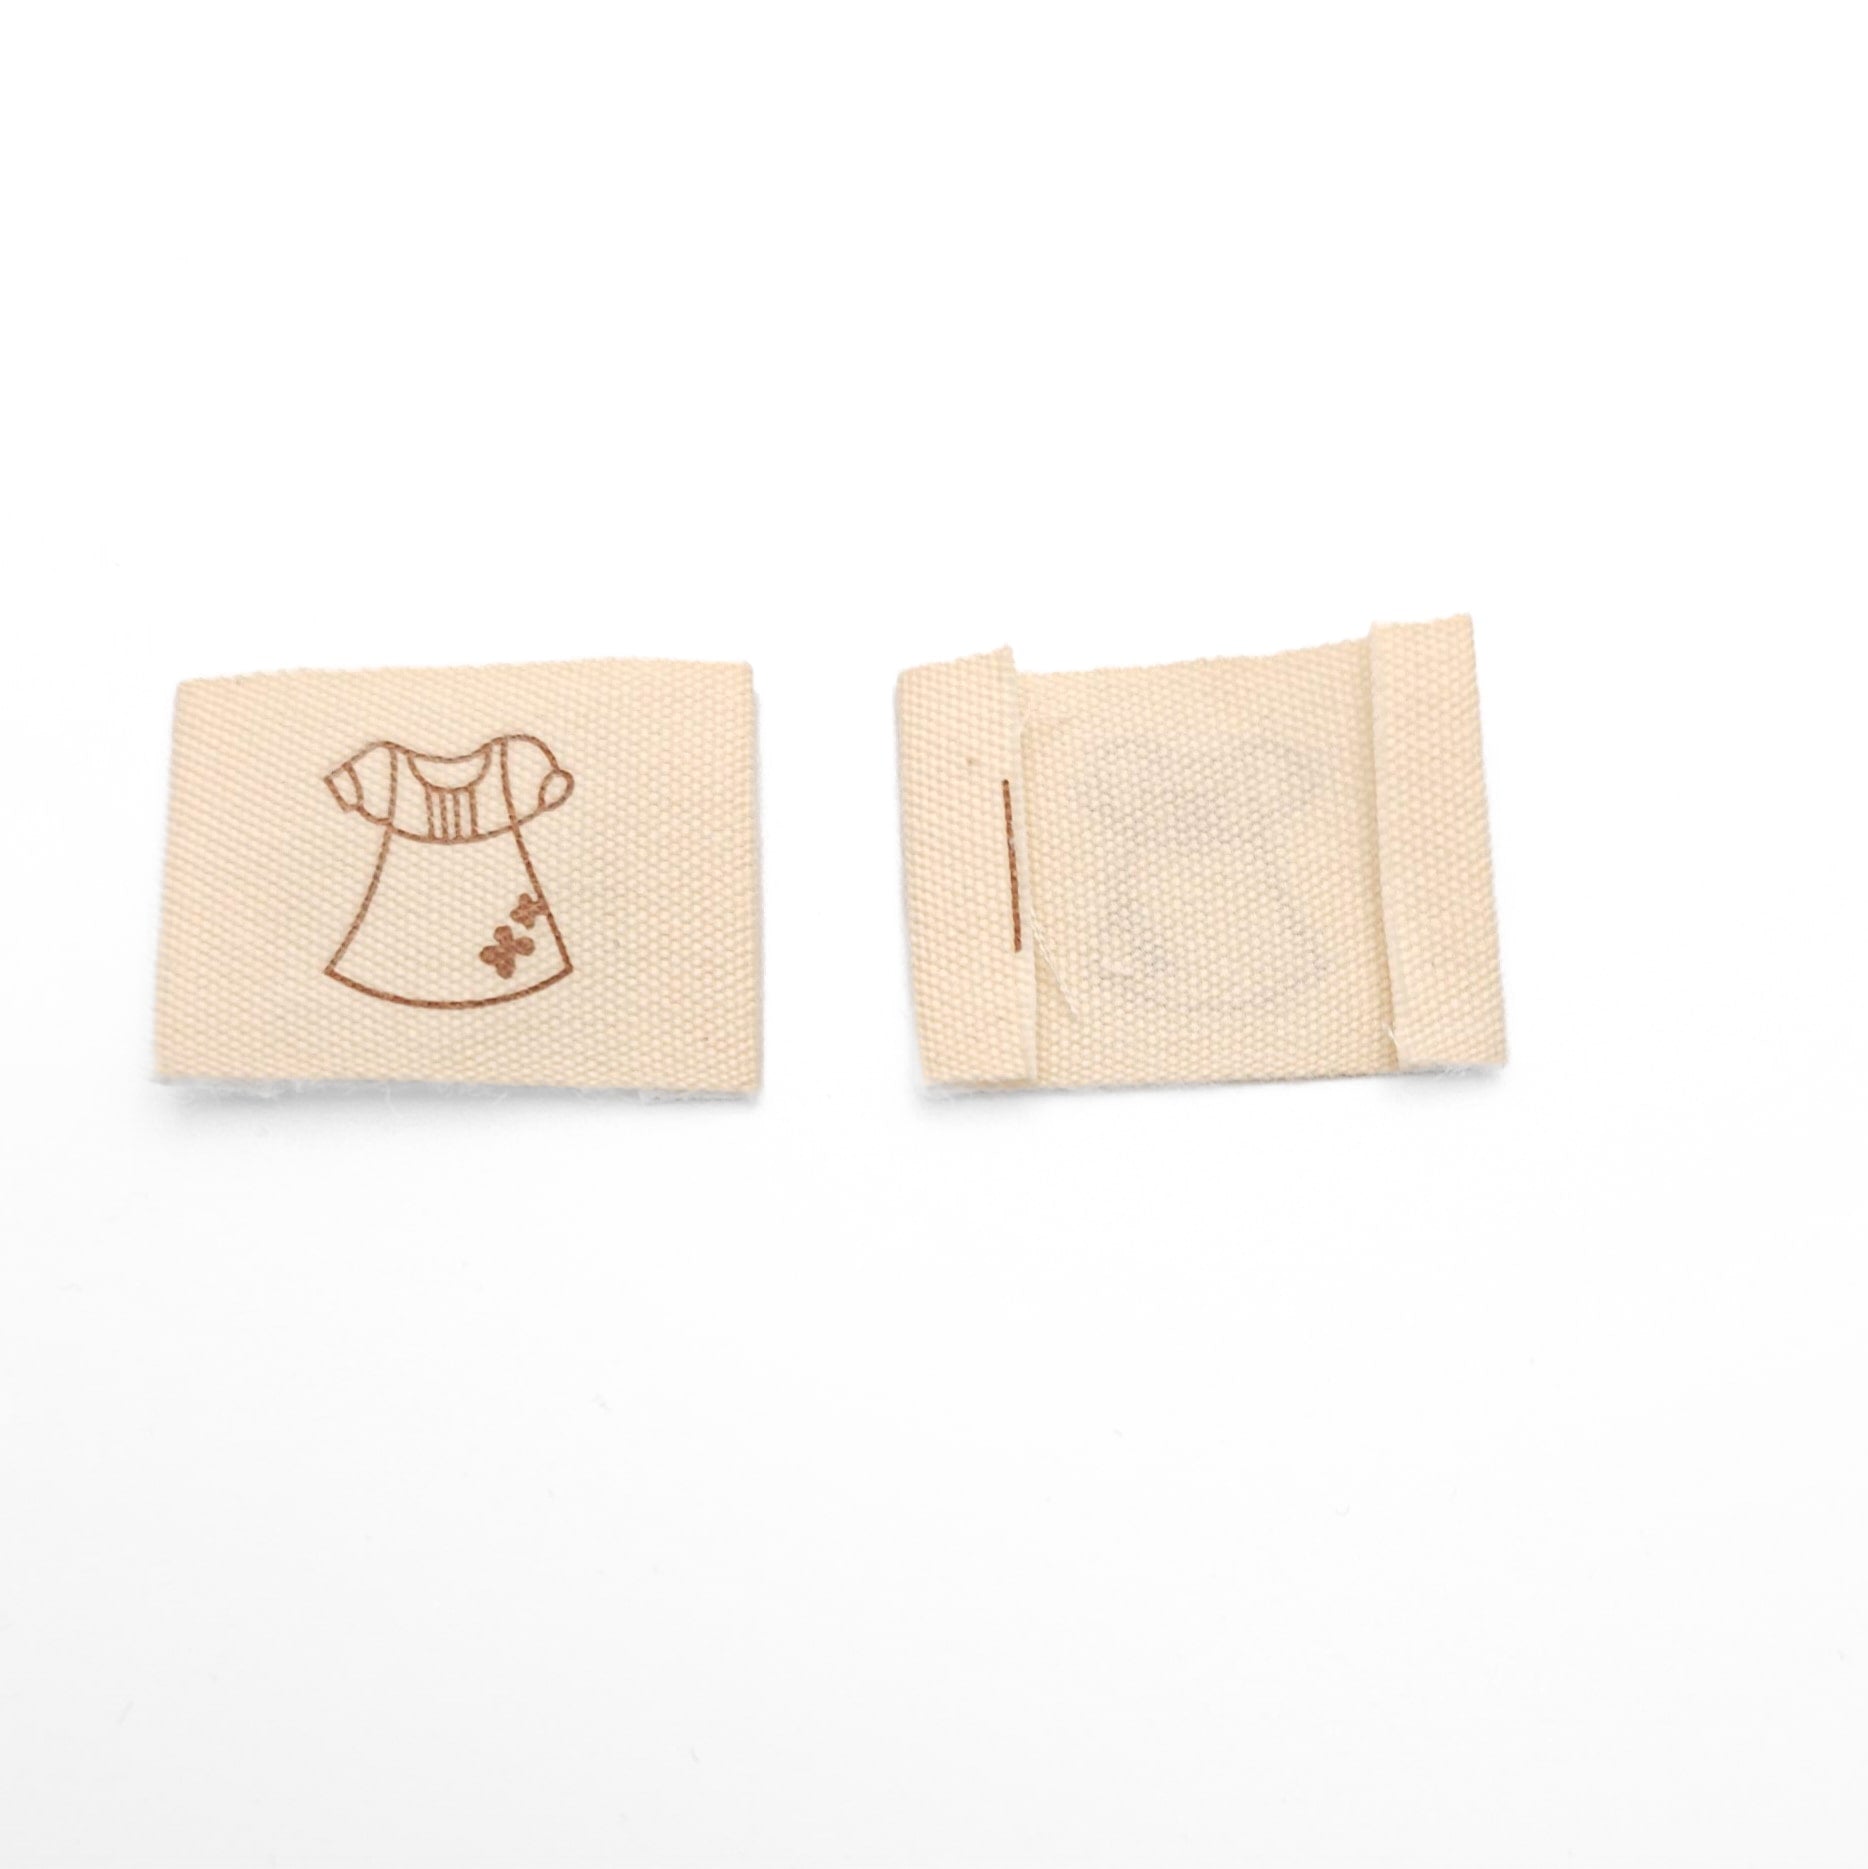 Étiquettes à coudre imprimées sur ruban – Chic Placard